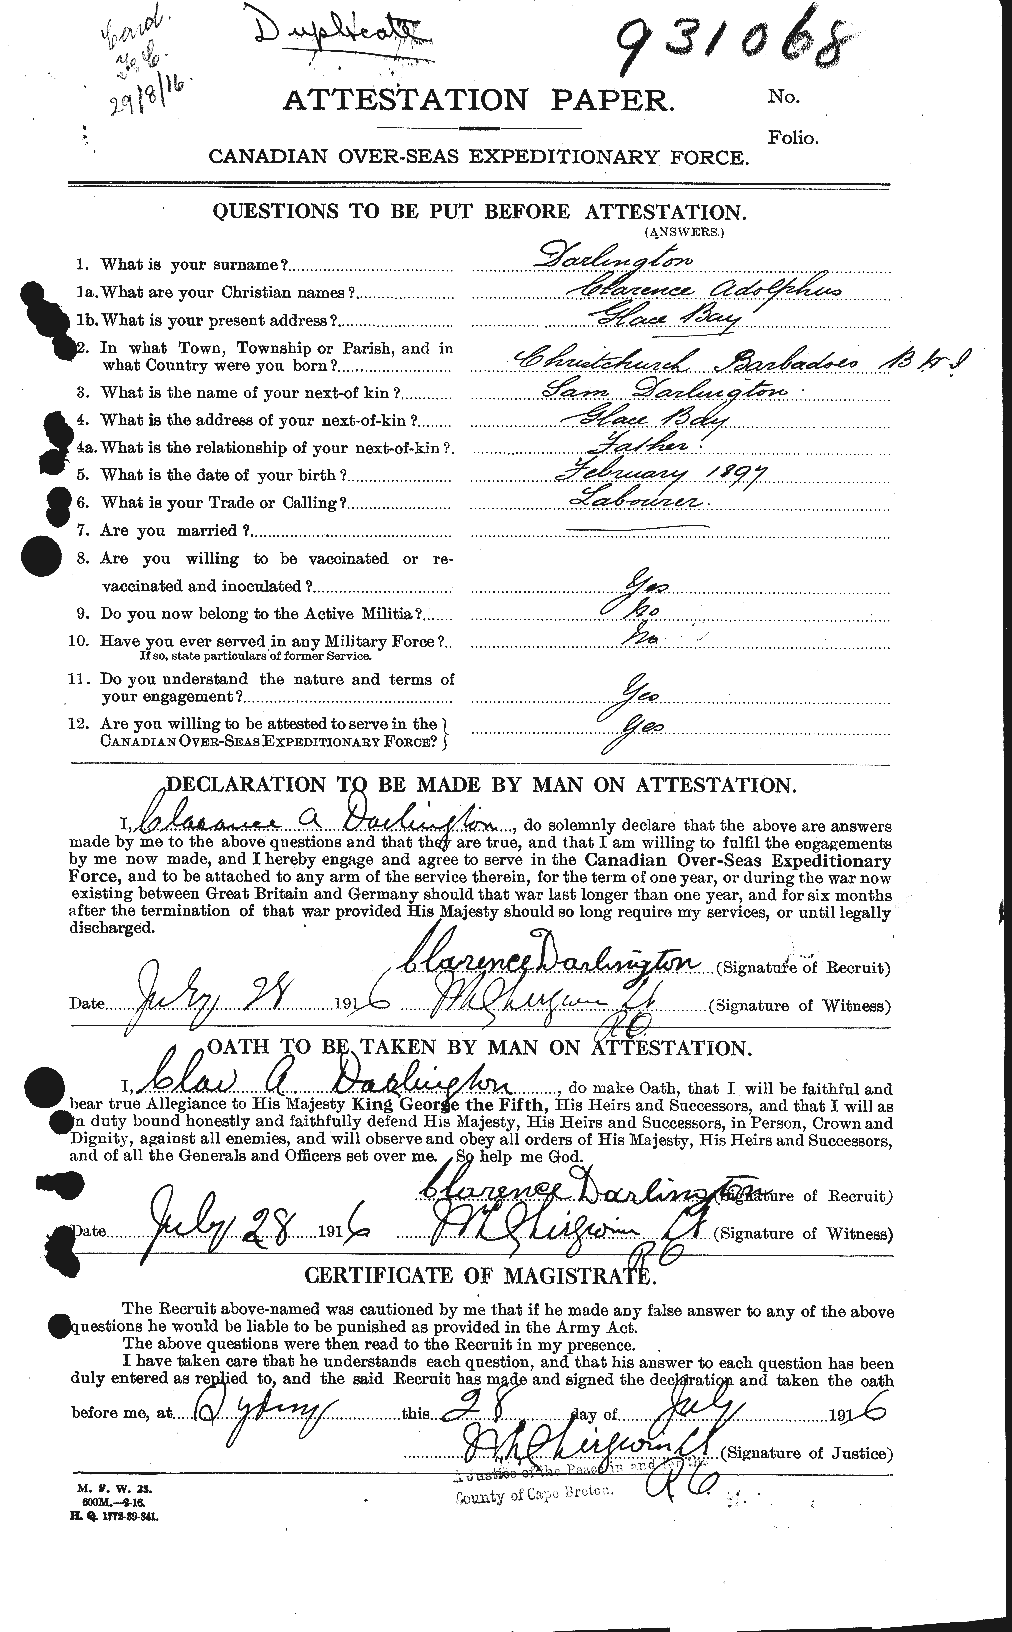 Dossiers du Personnel de la Première Guerre mondiale - CEC 280257a